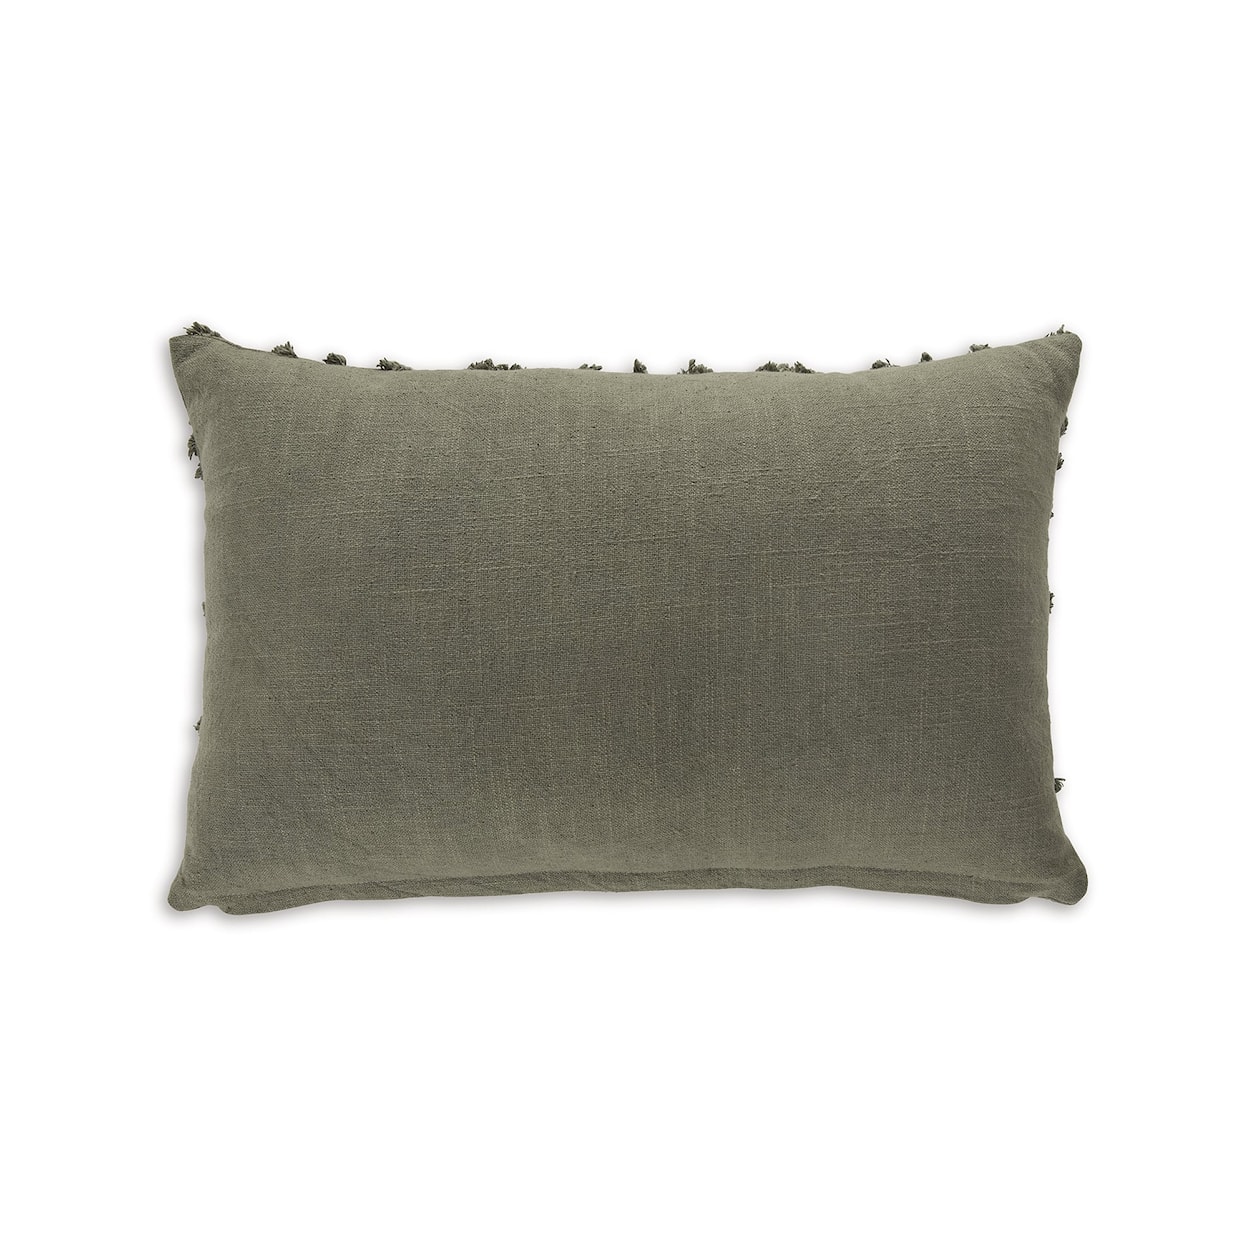 Ashley Signature Design Finnbrook Pillow